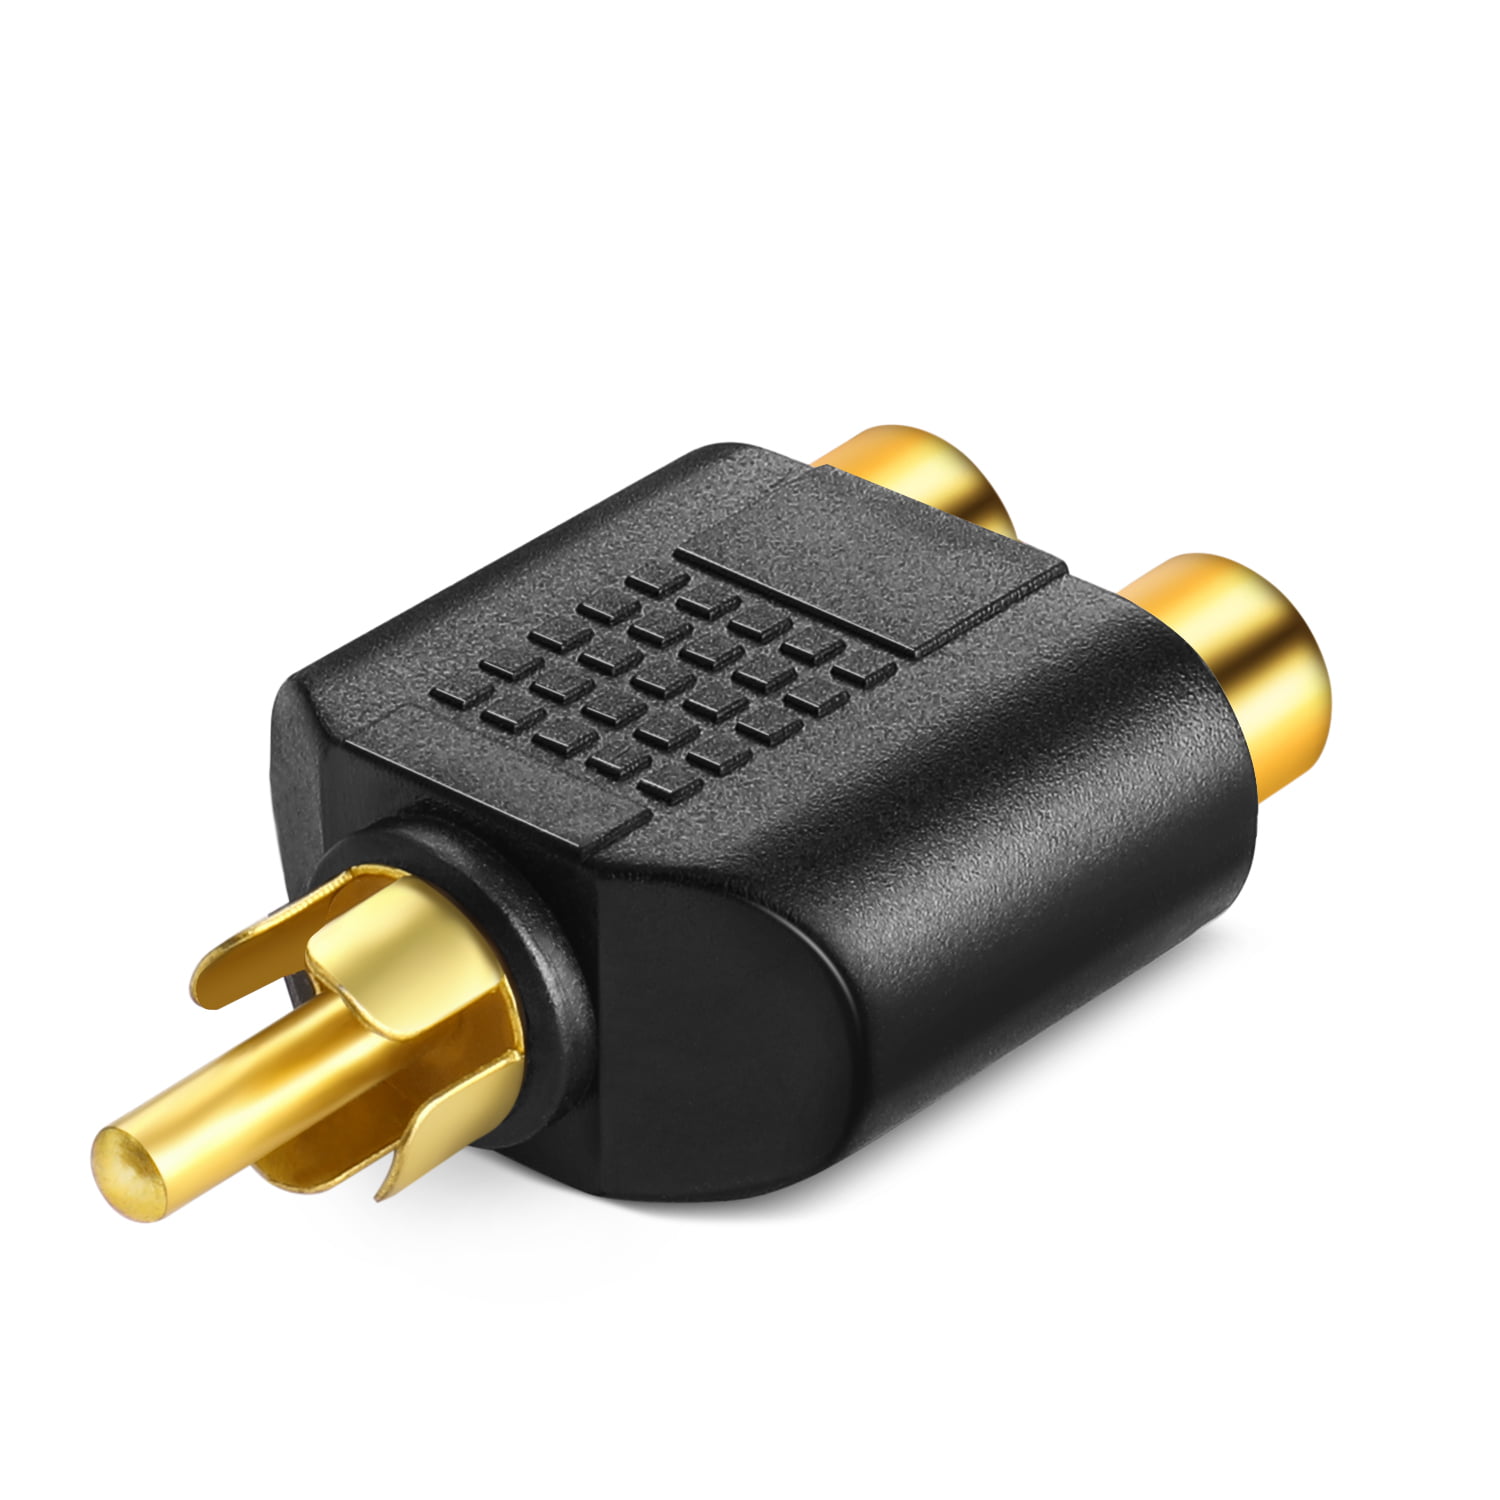 2 Pcs Gold Plated AV Audio Splitter Plug RCA Adapter 1 Male to 2 Female 